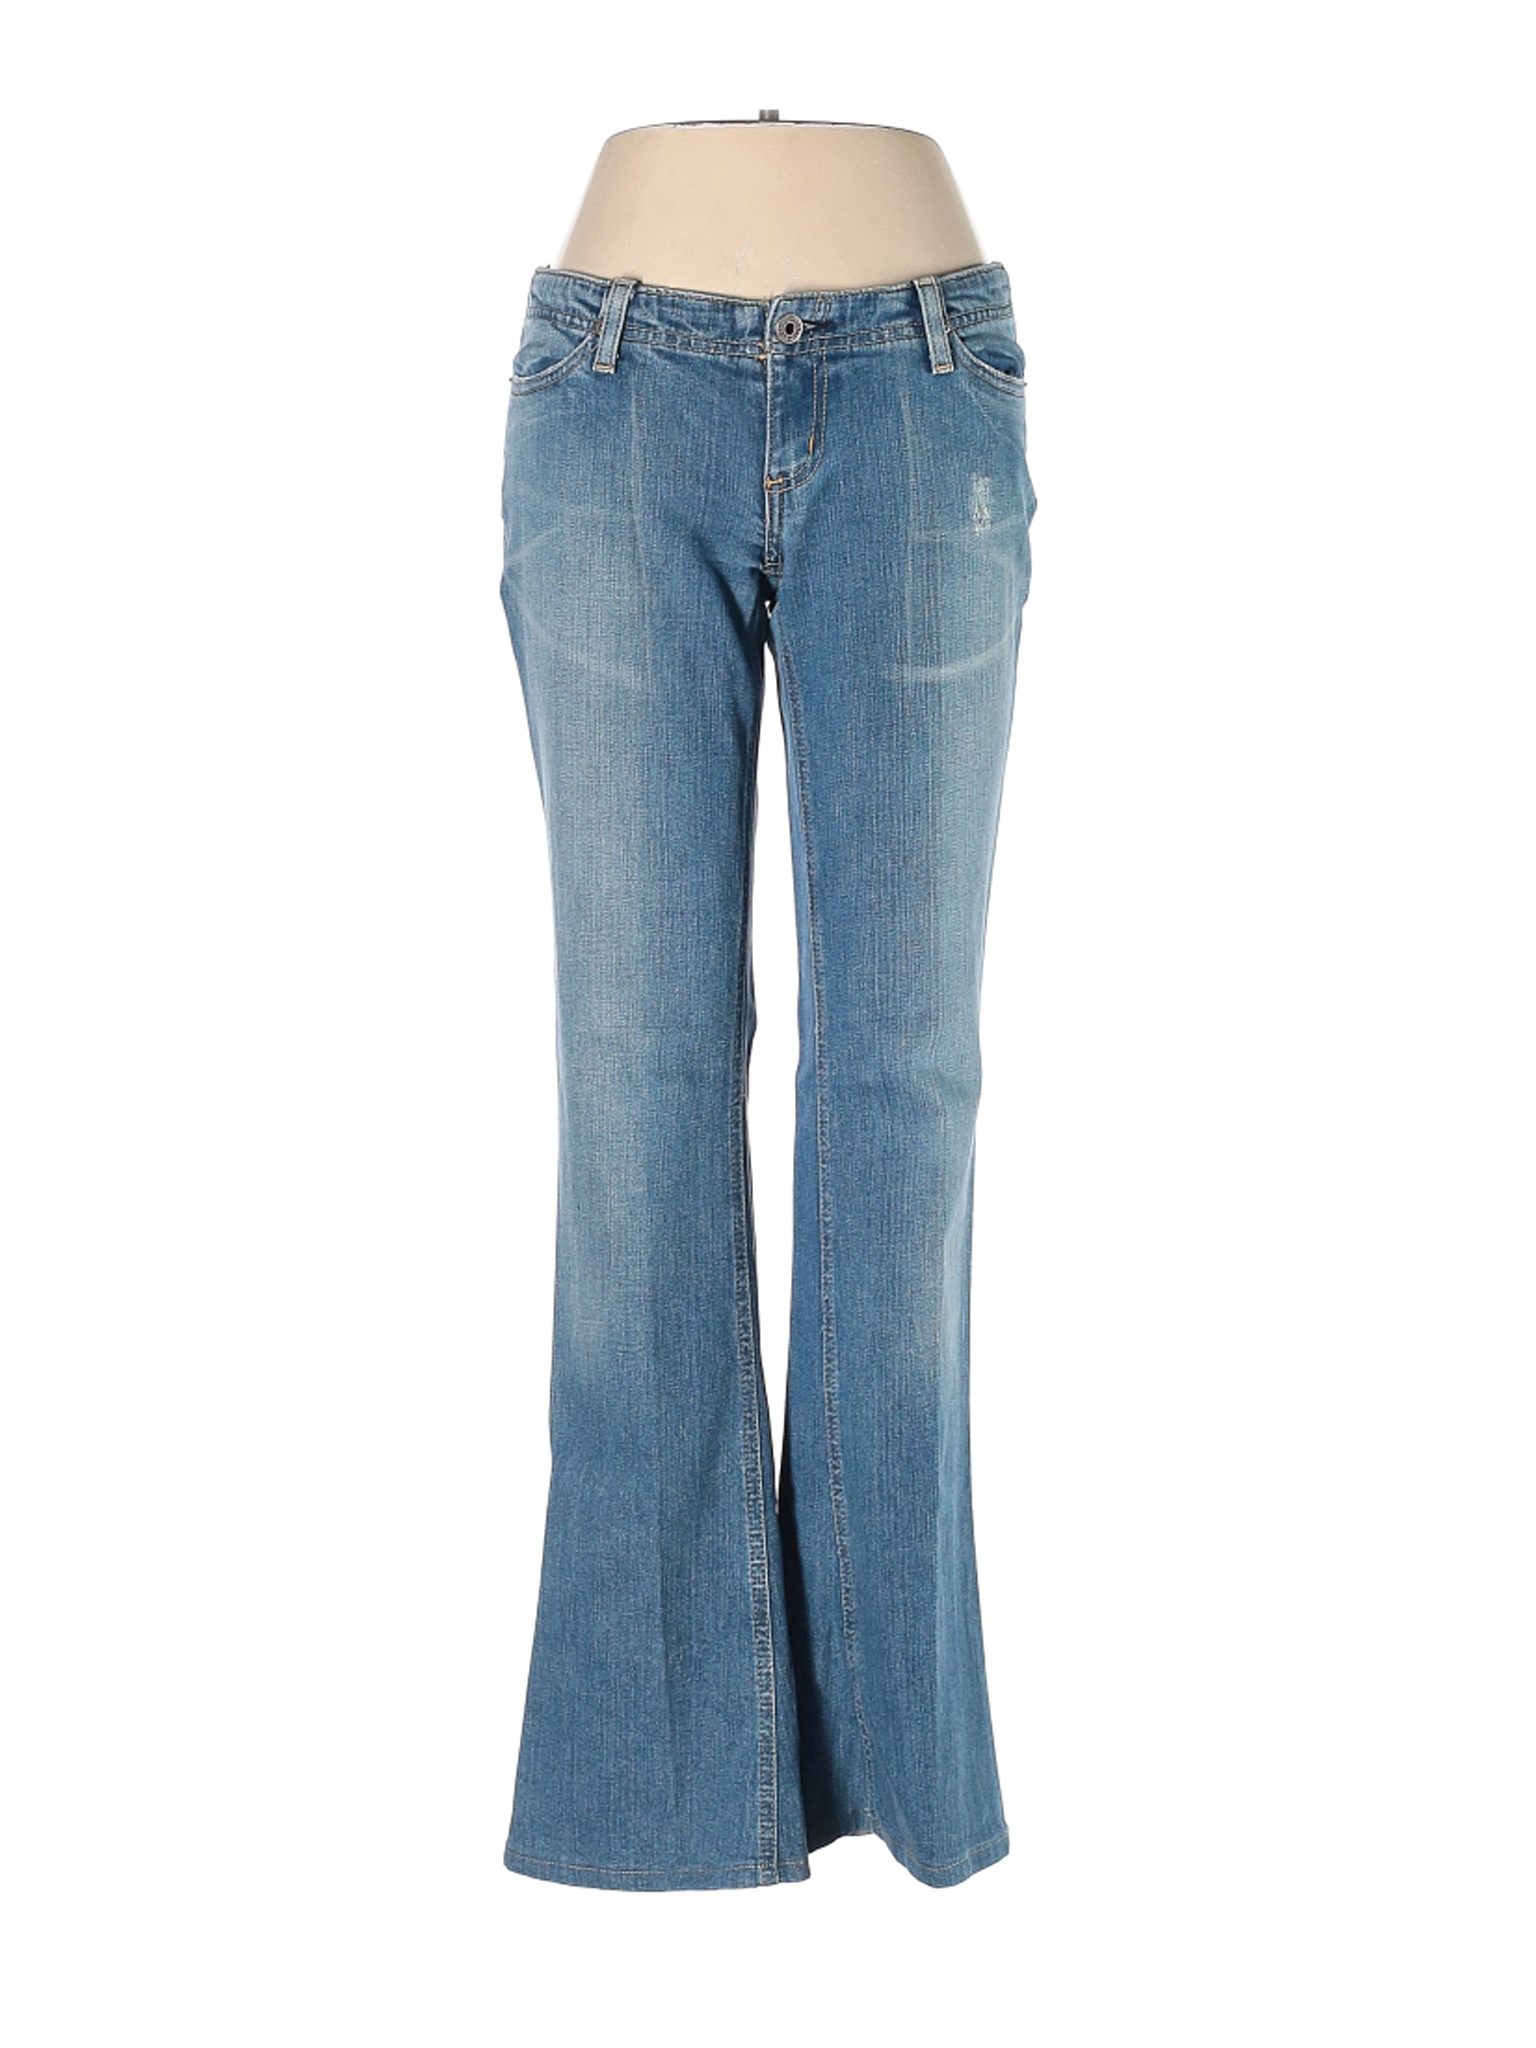 Chip & Pepper Women Blue Jeans 27W | eBay